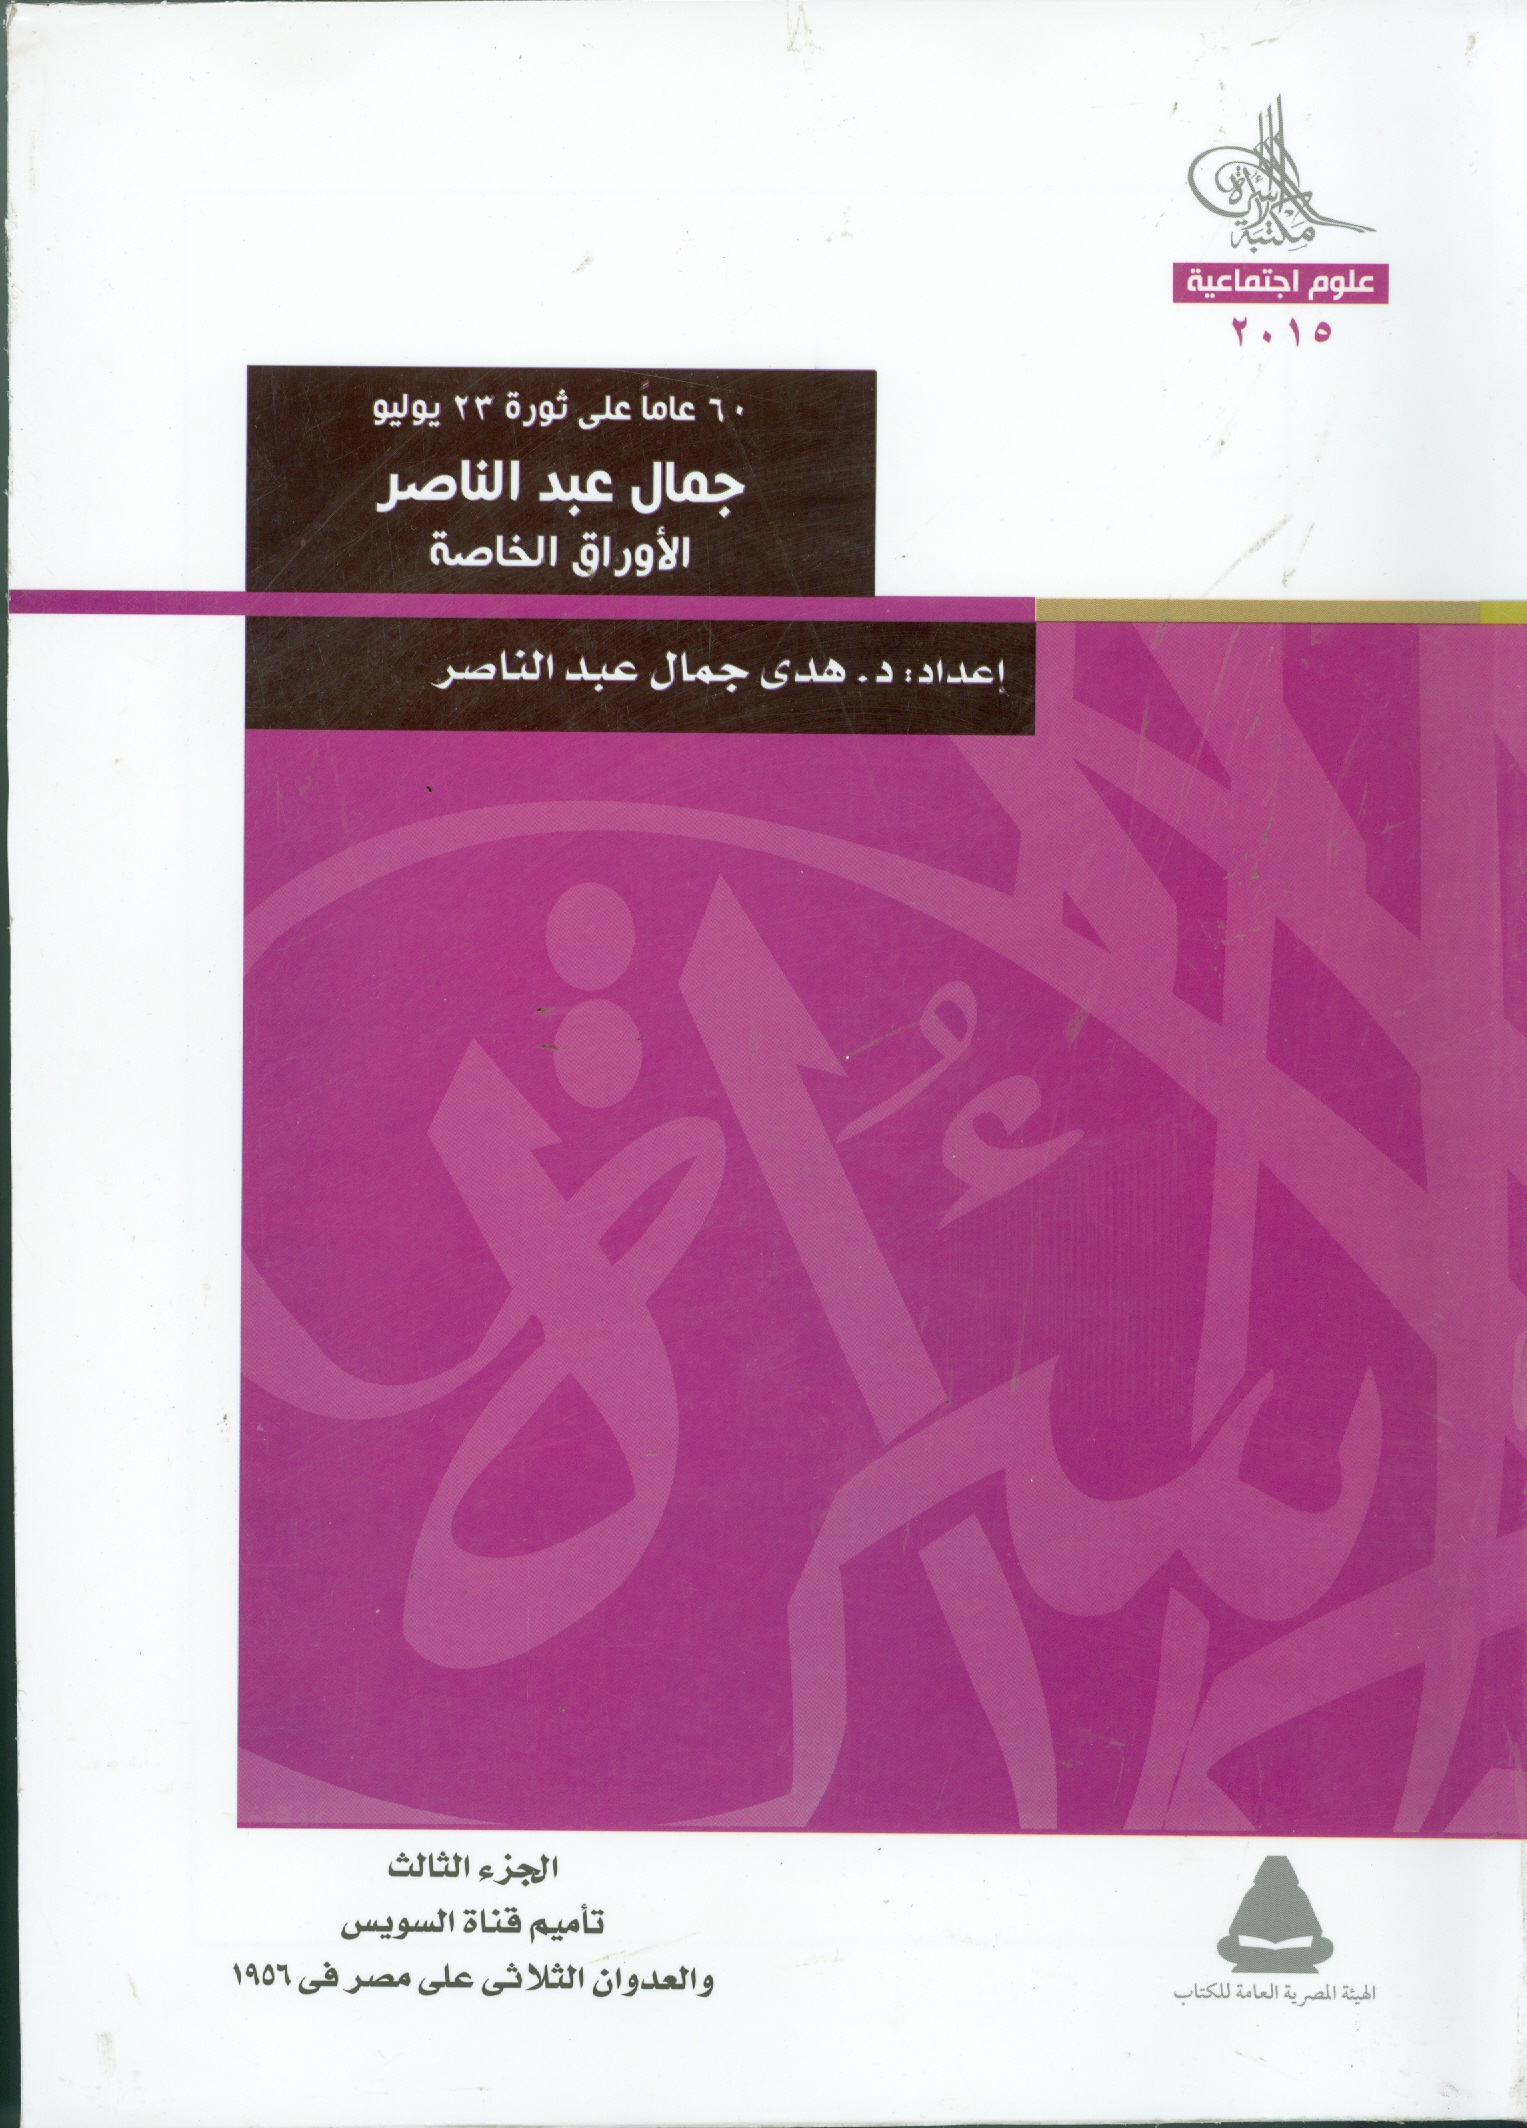 الأوراق الخاصة لجمال عبد الناصر في مكتبة الأسرة مصر العربية